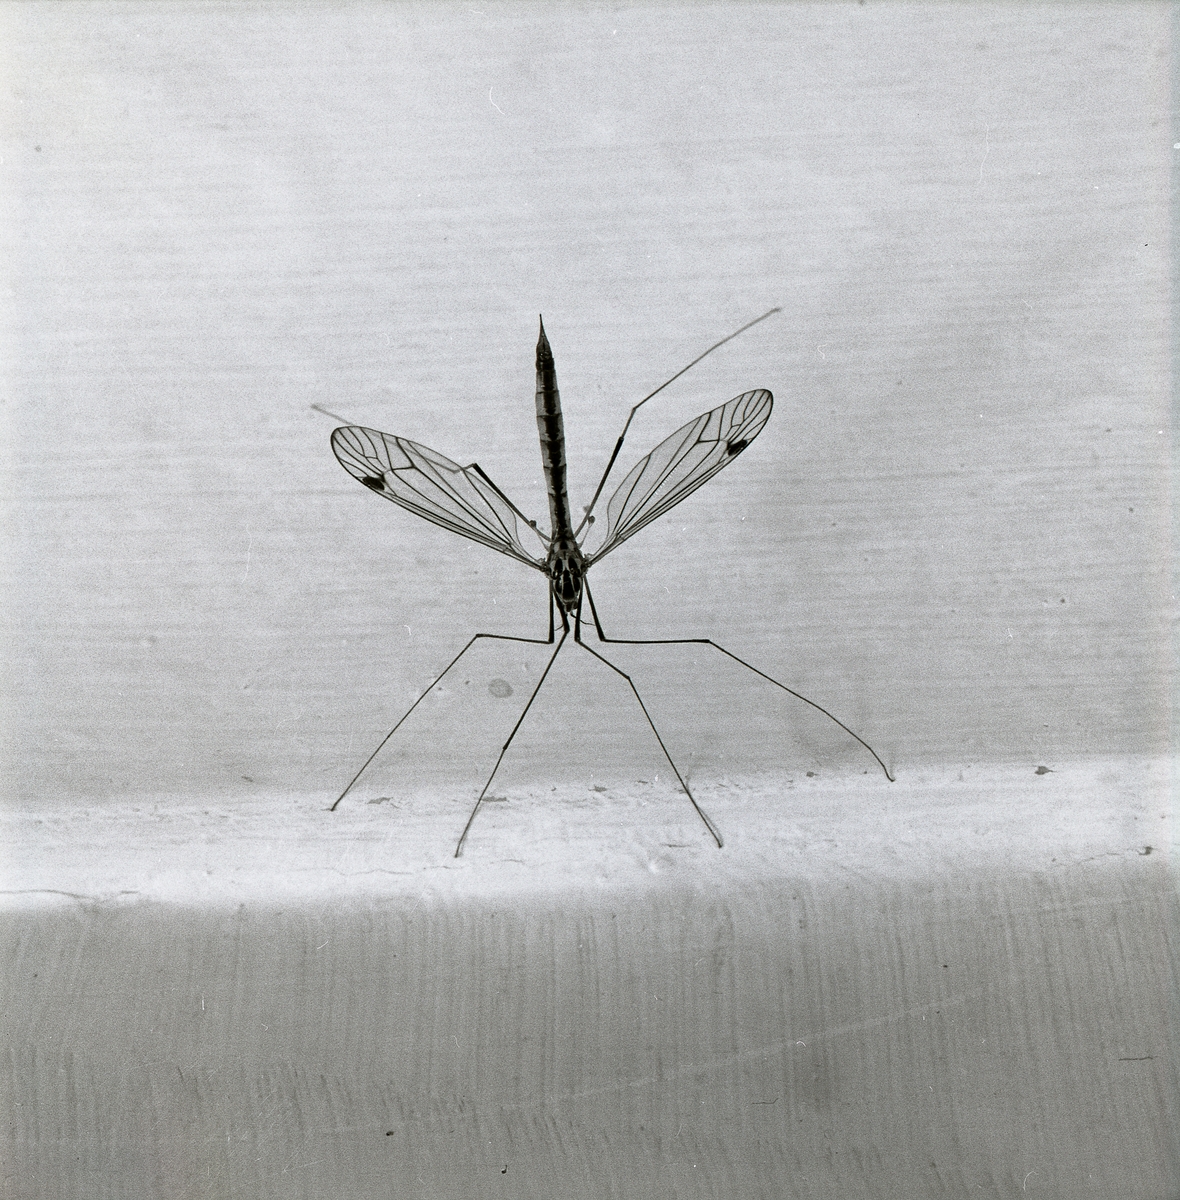 Sommaren 1965 fotograferar Hilding Mickelsson denna insekt som han kallar för långbentakrank. Harkranken har vingarna utsträckta så dess mönster uppträder tydligt.